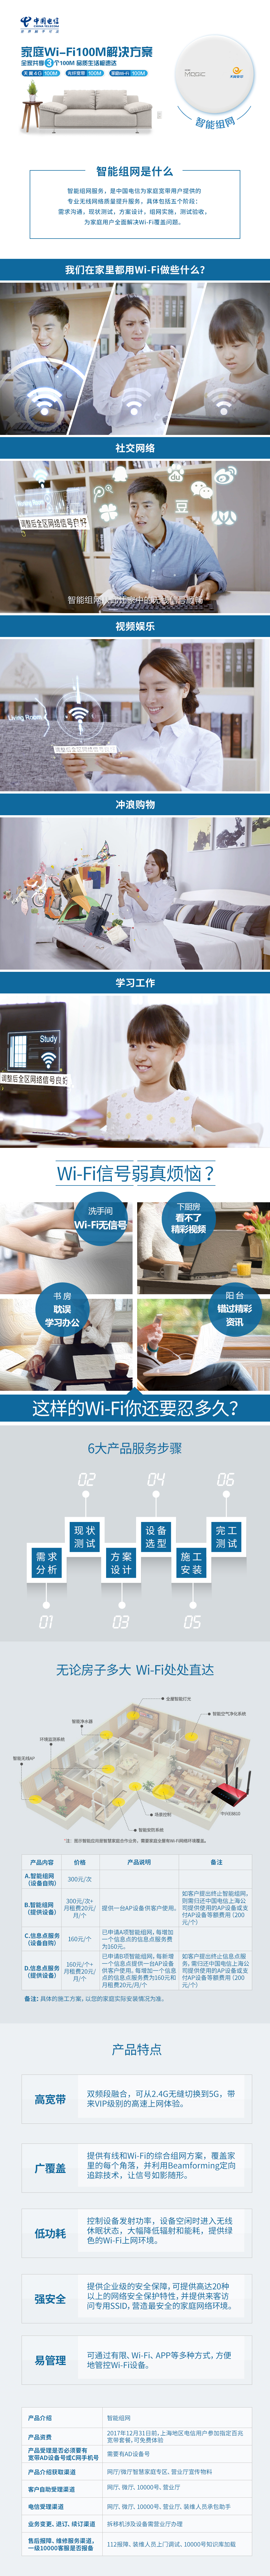 中国电信智能组网 家庭Wi-Fi 100M解决方案